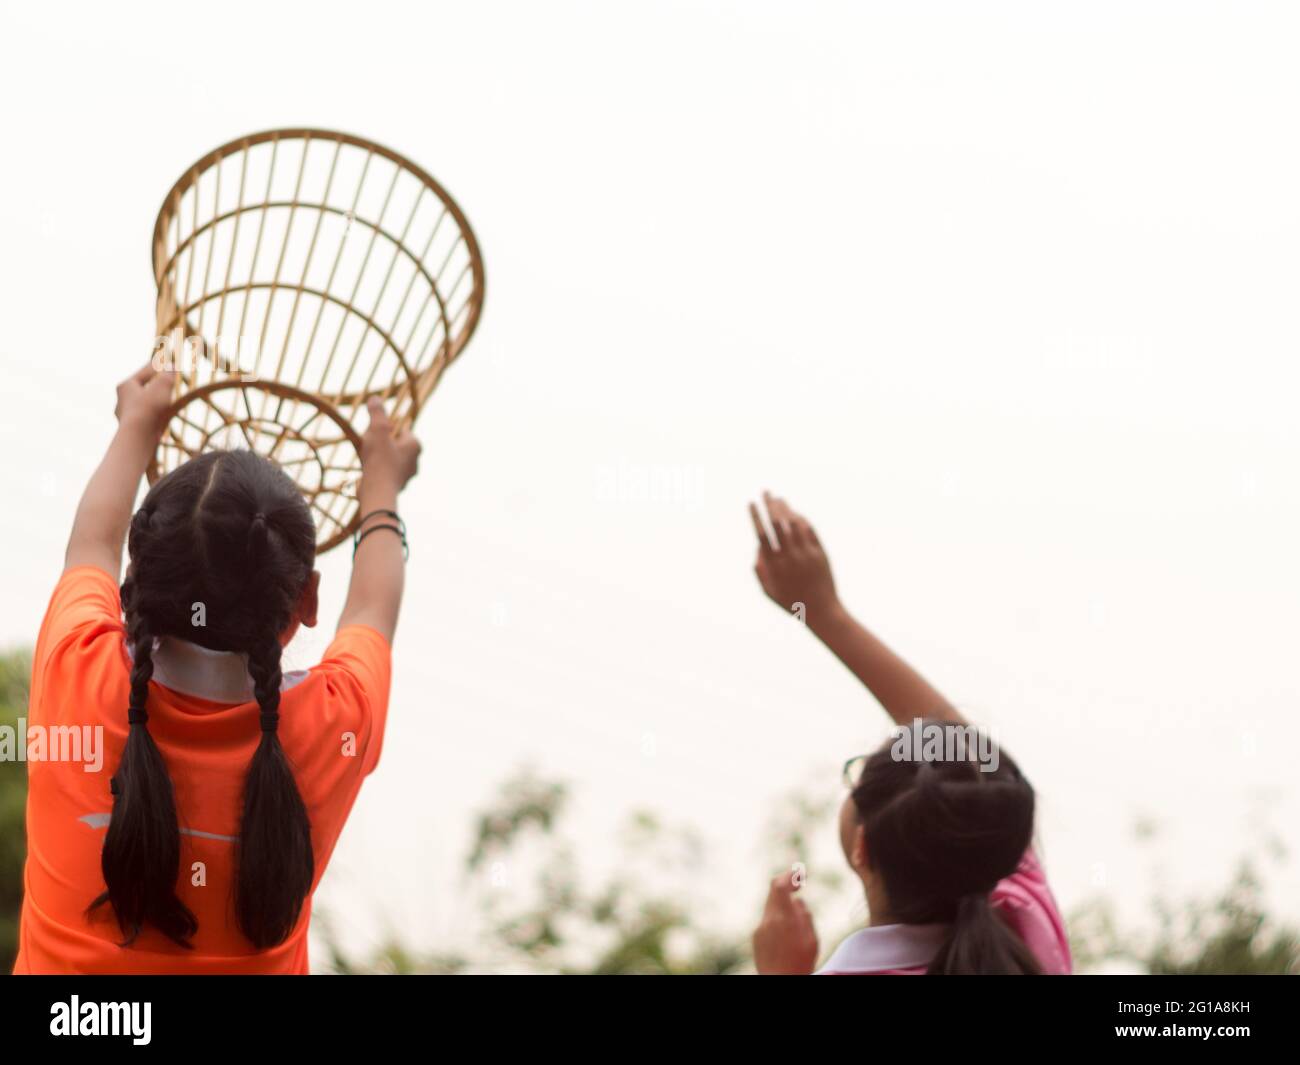 Una ragazza in una posizione di presa del cestino in un gioco della  sedia-sfera della scuola Foto stock - Alamy